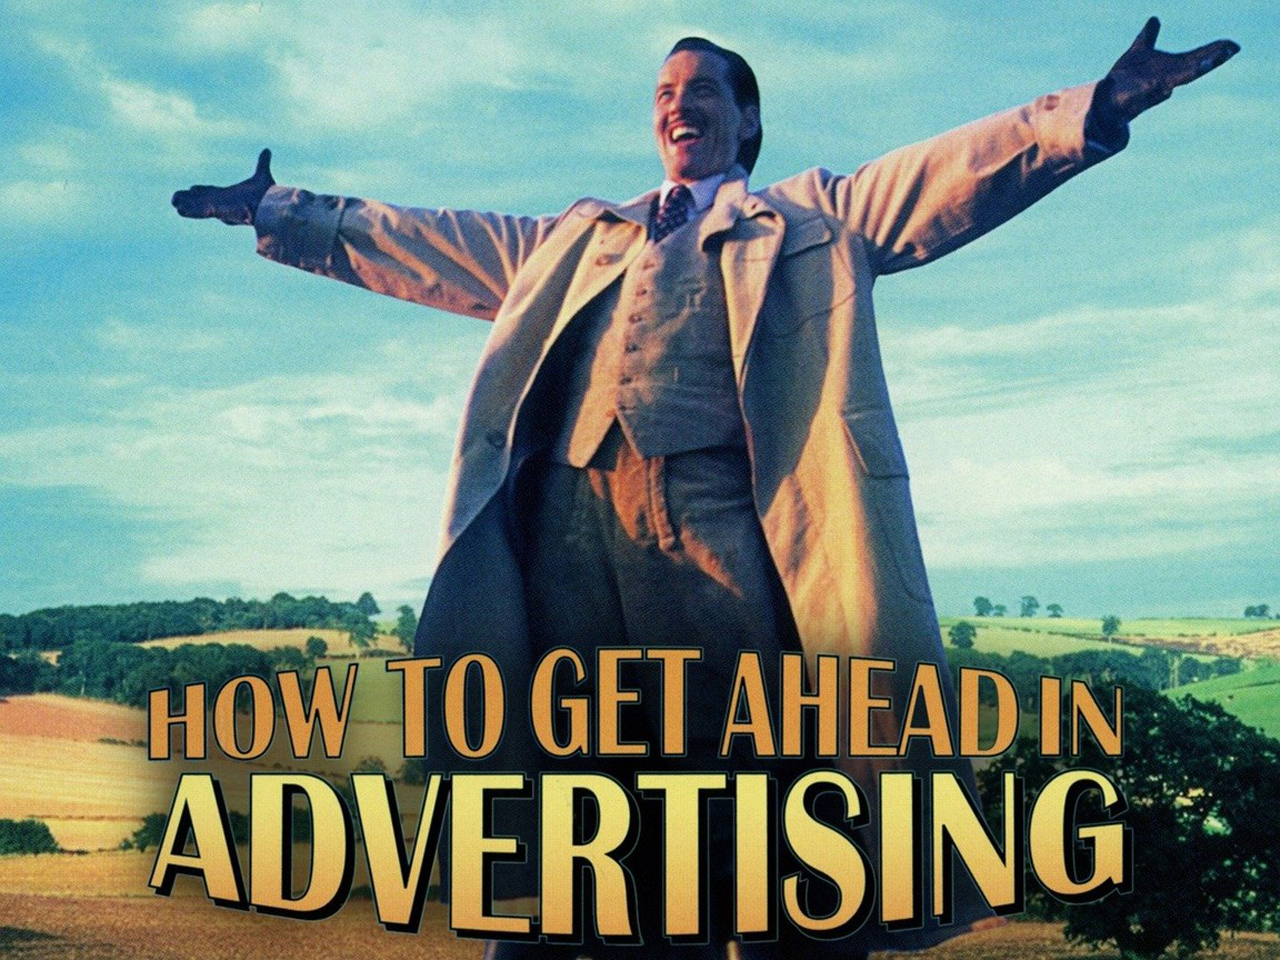 Get Ahead in Advertising